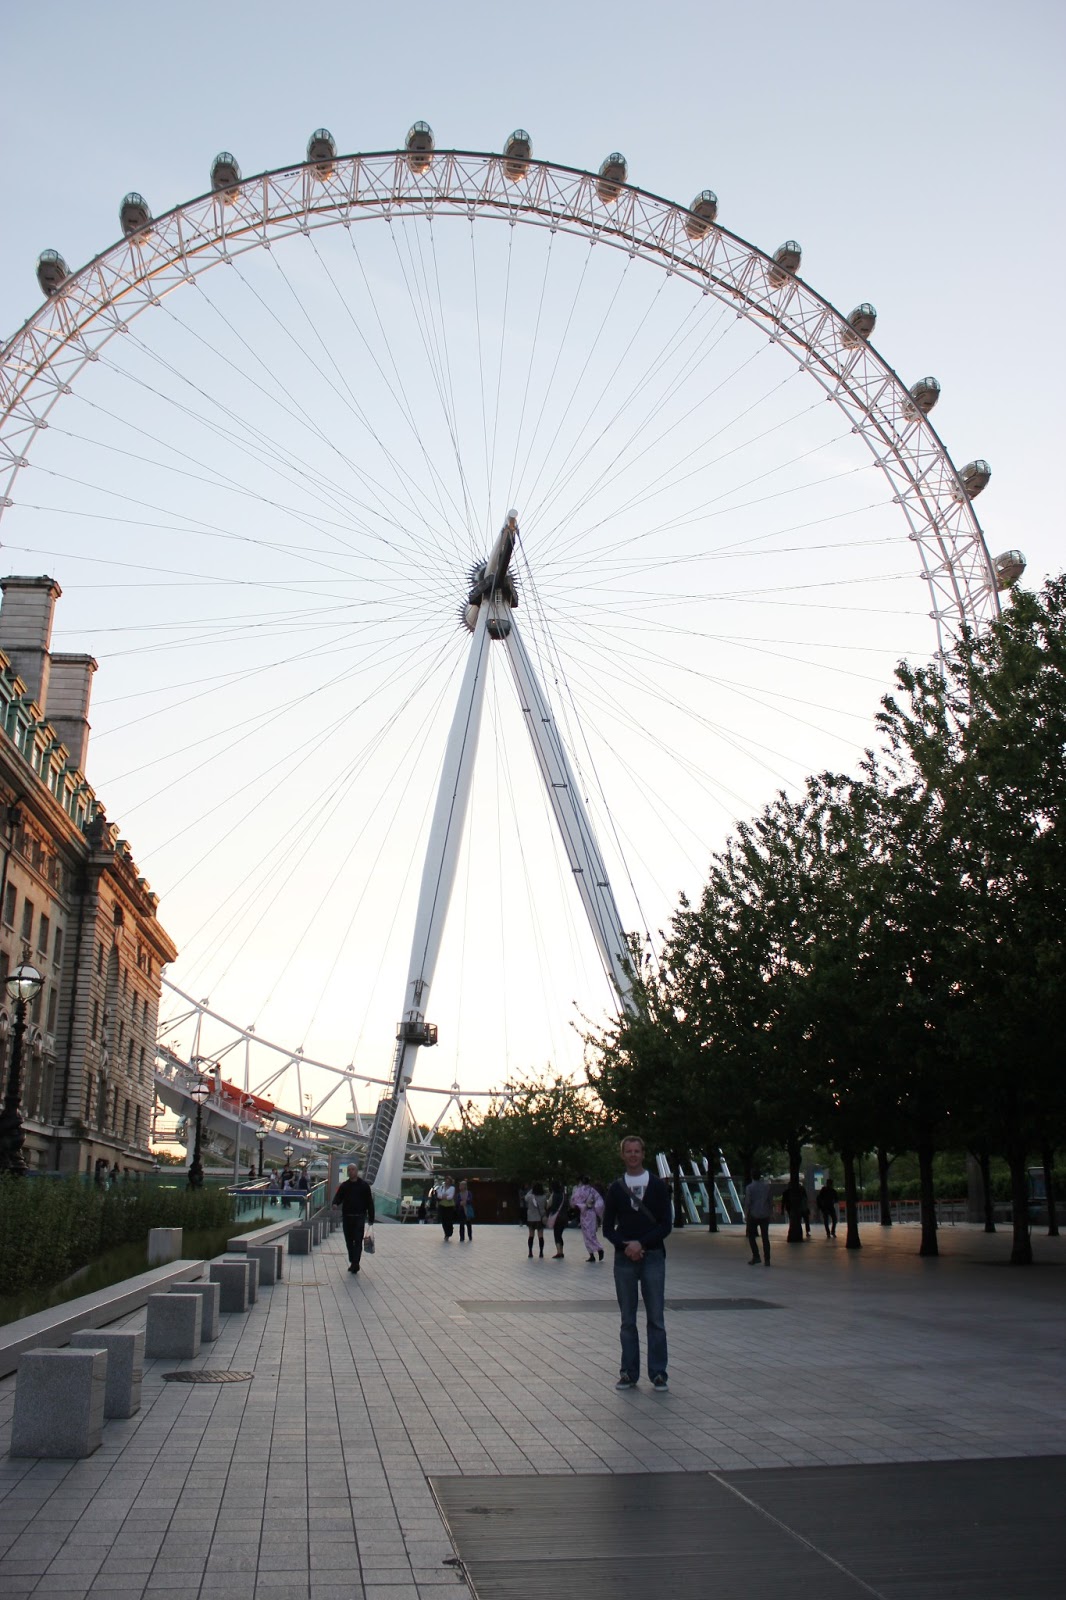 London Day 3: The London Eye